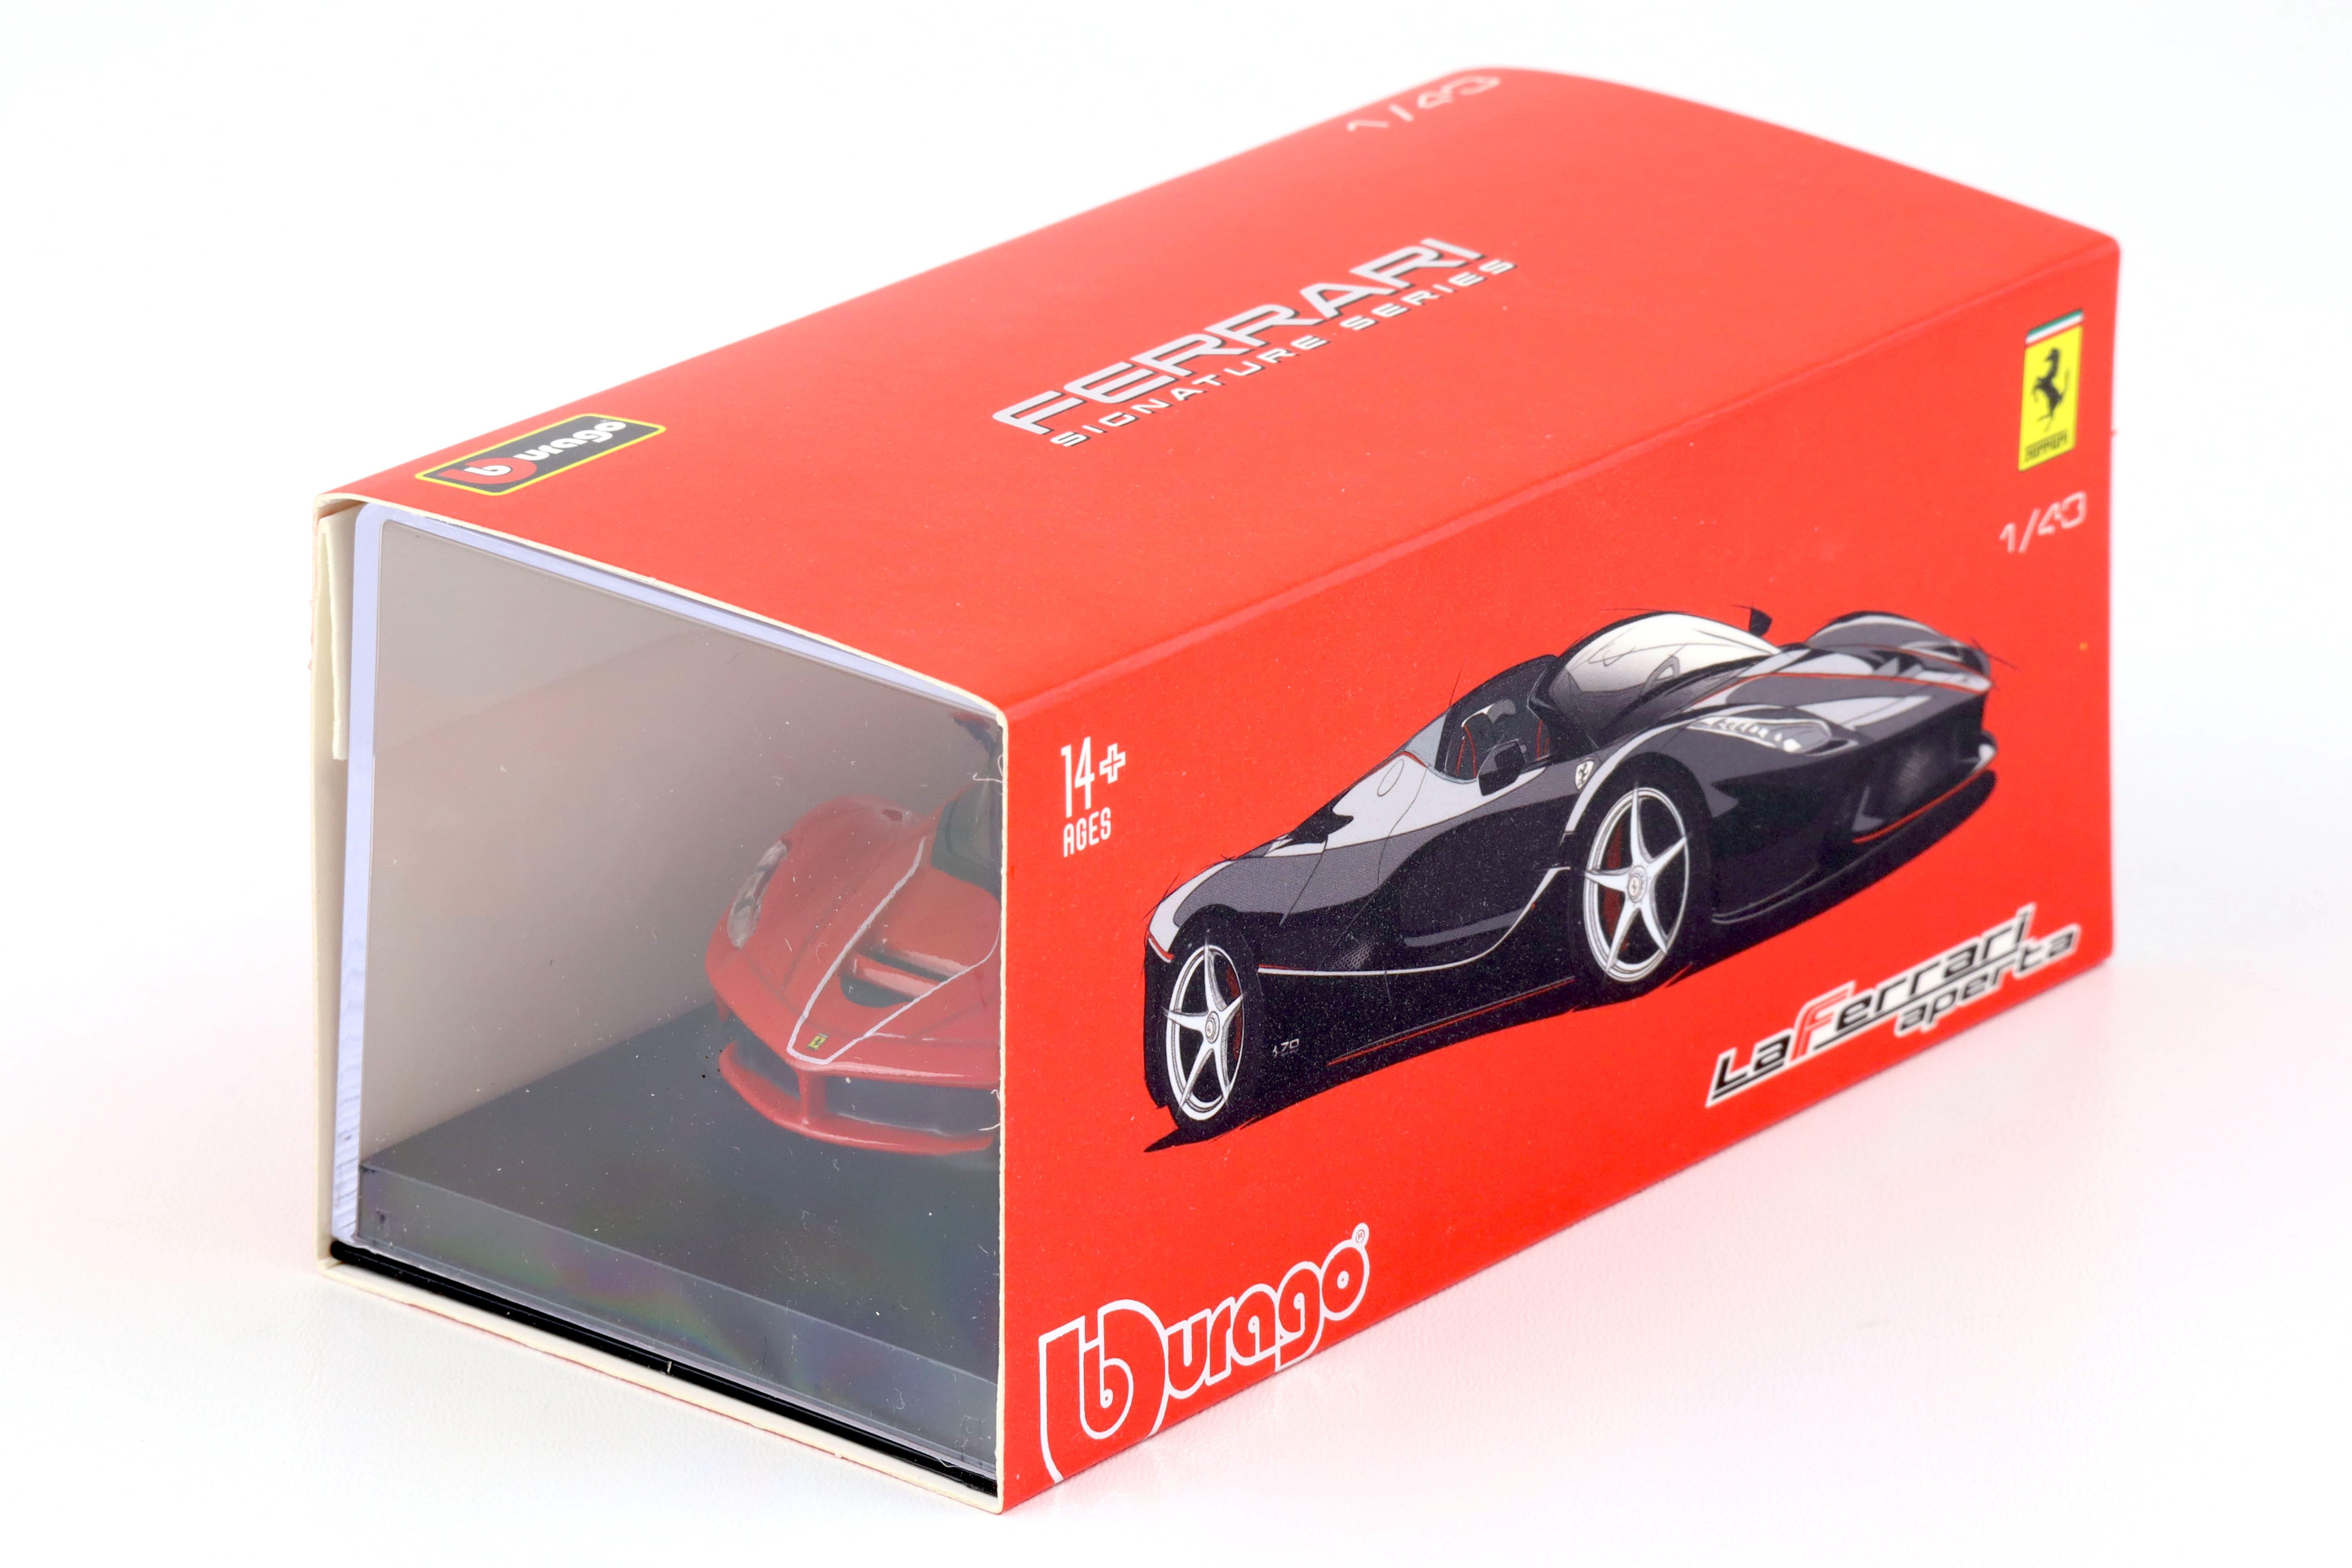 1:43 Bburago Signature Ferrari LaFerrari Aperta red